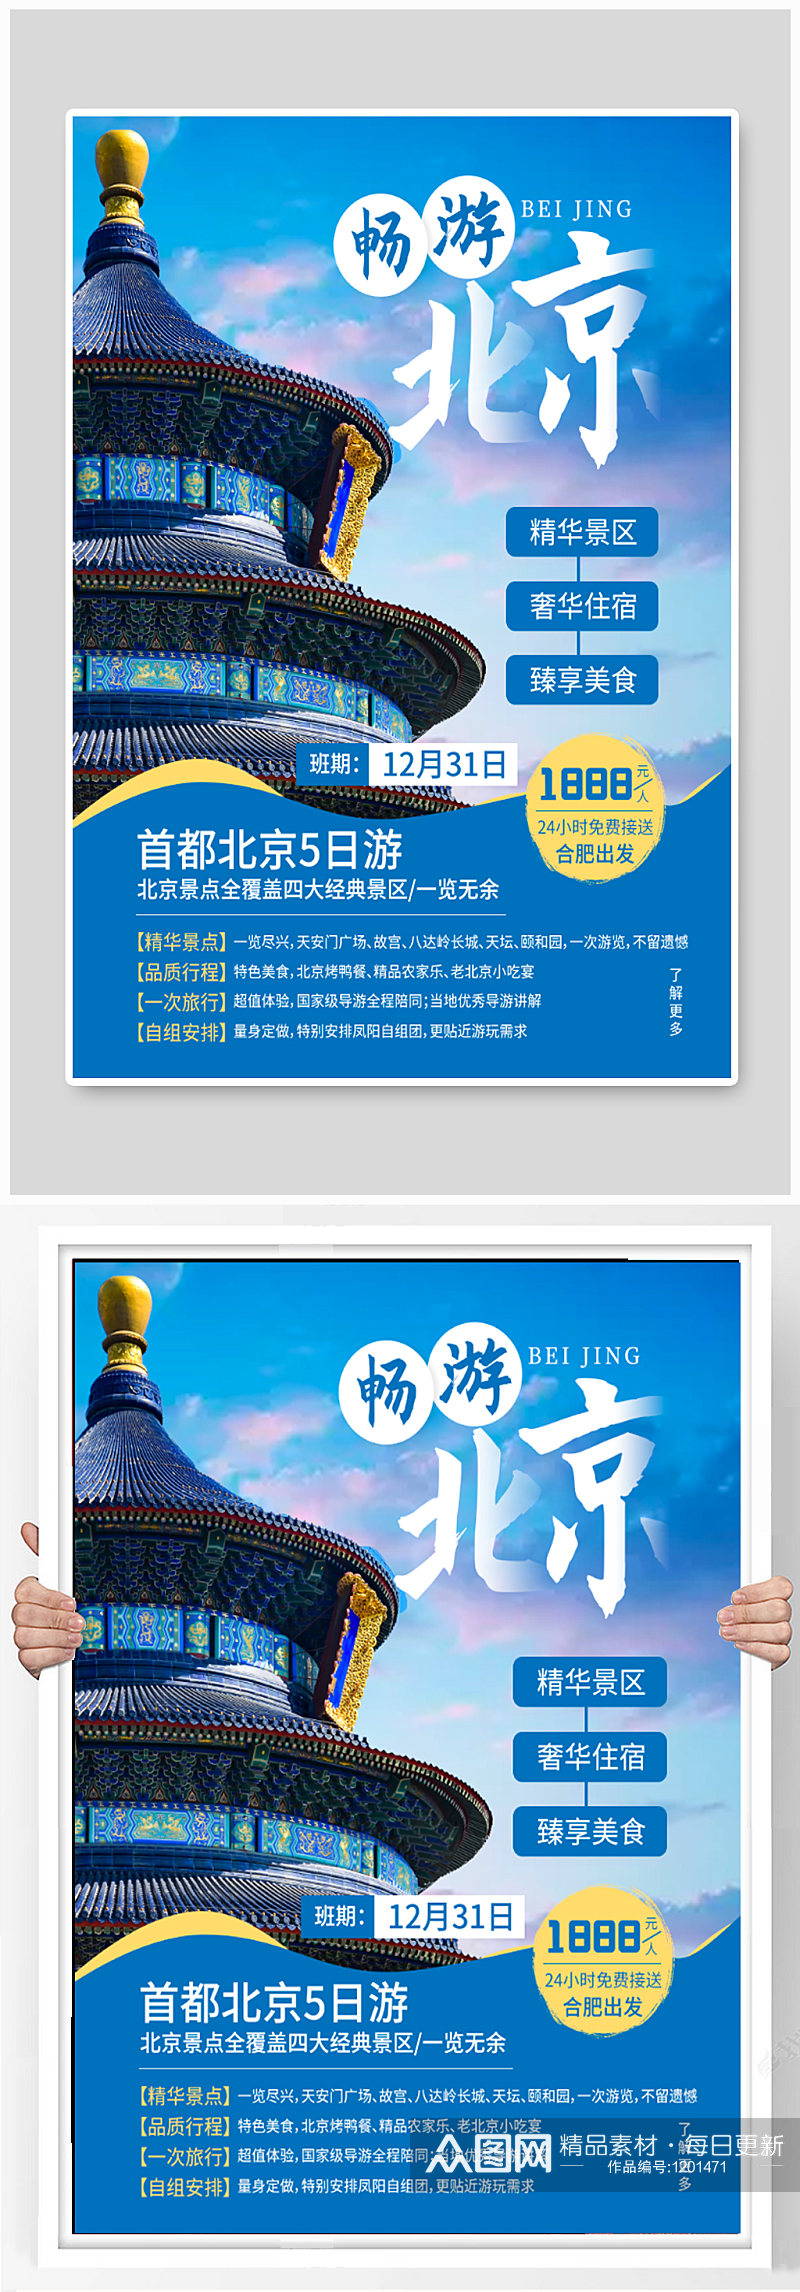 畅游北京旅游海报素材